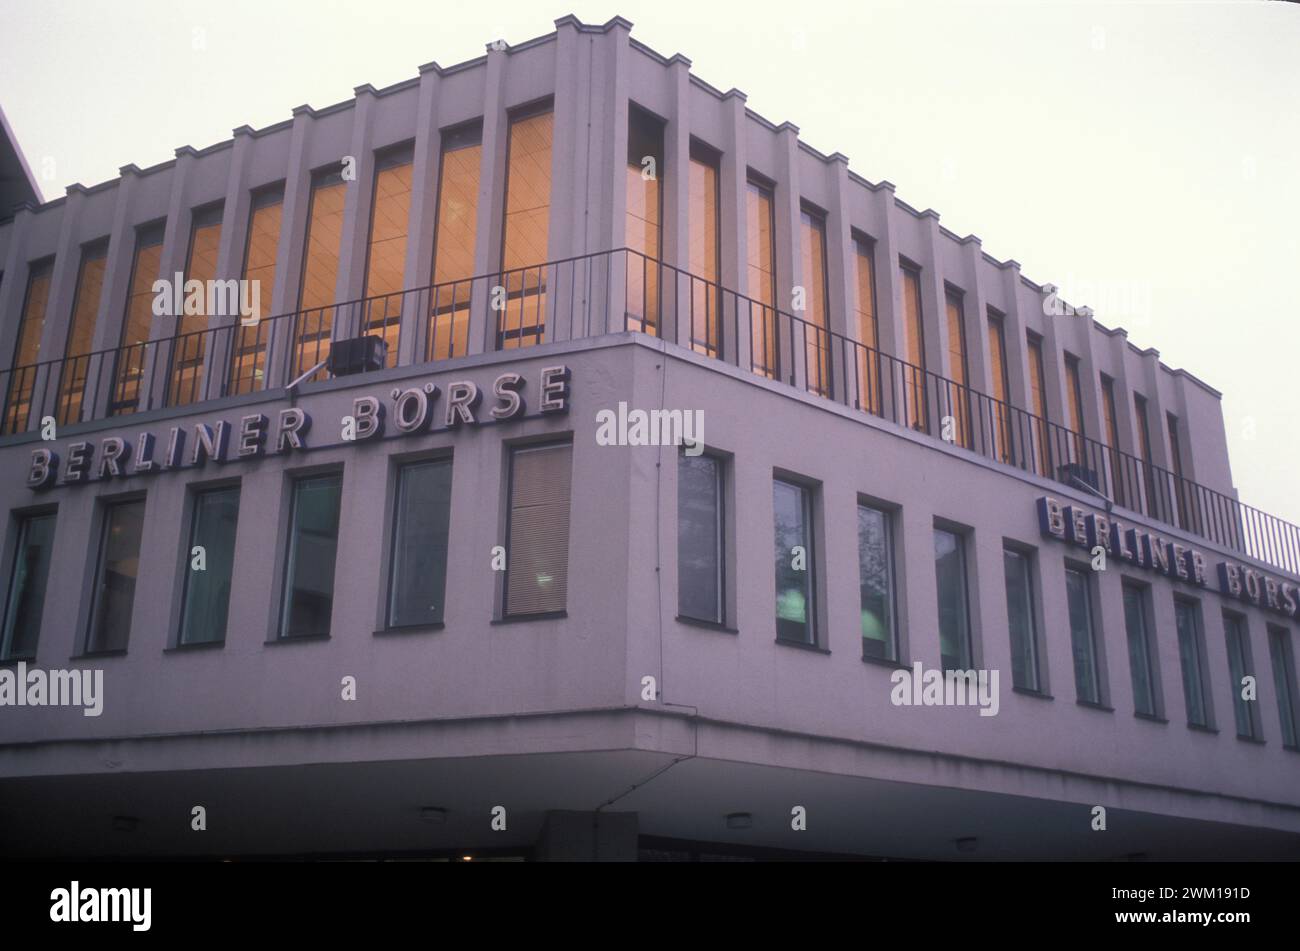 4065461 Berlin Ouest, 1989. La Bourse de Berlin ; (add.info.: Berlin (1989) Ovest, 1989. Borsa di berlino) ; © Marcello Mencarini. Tous droits réservés 2024. Banque D'Images